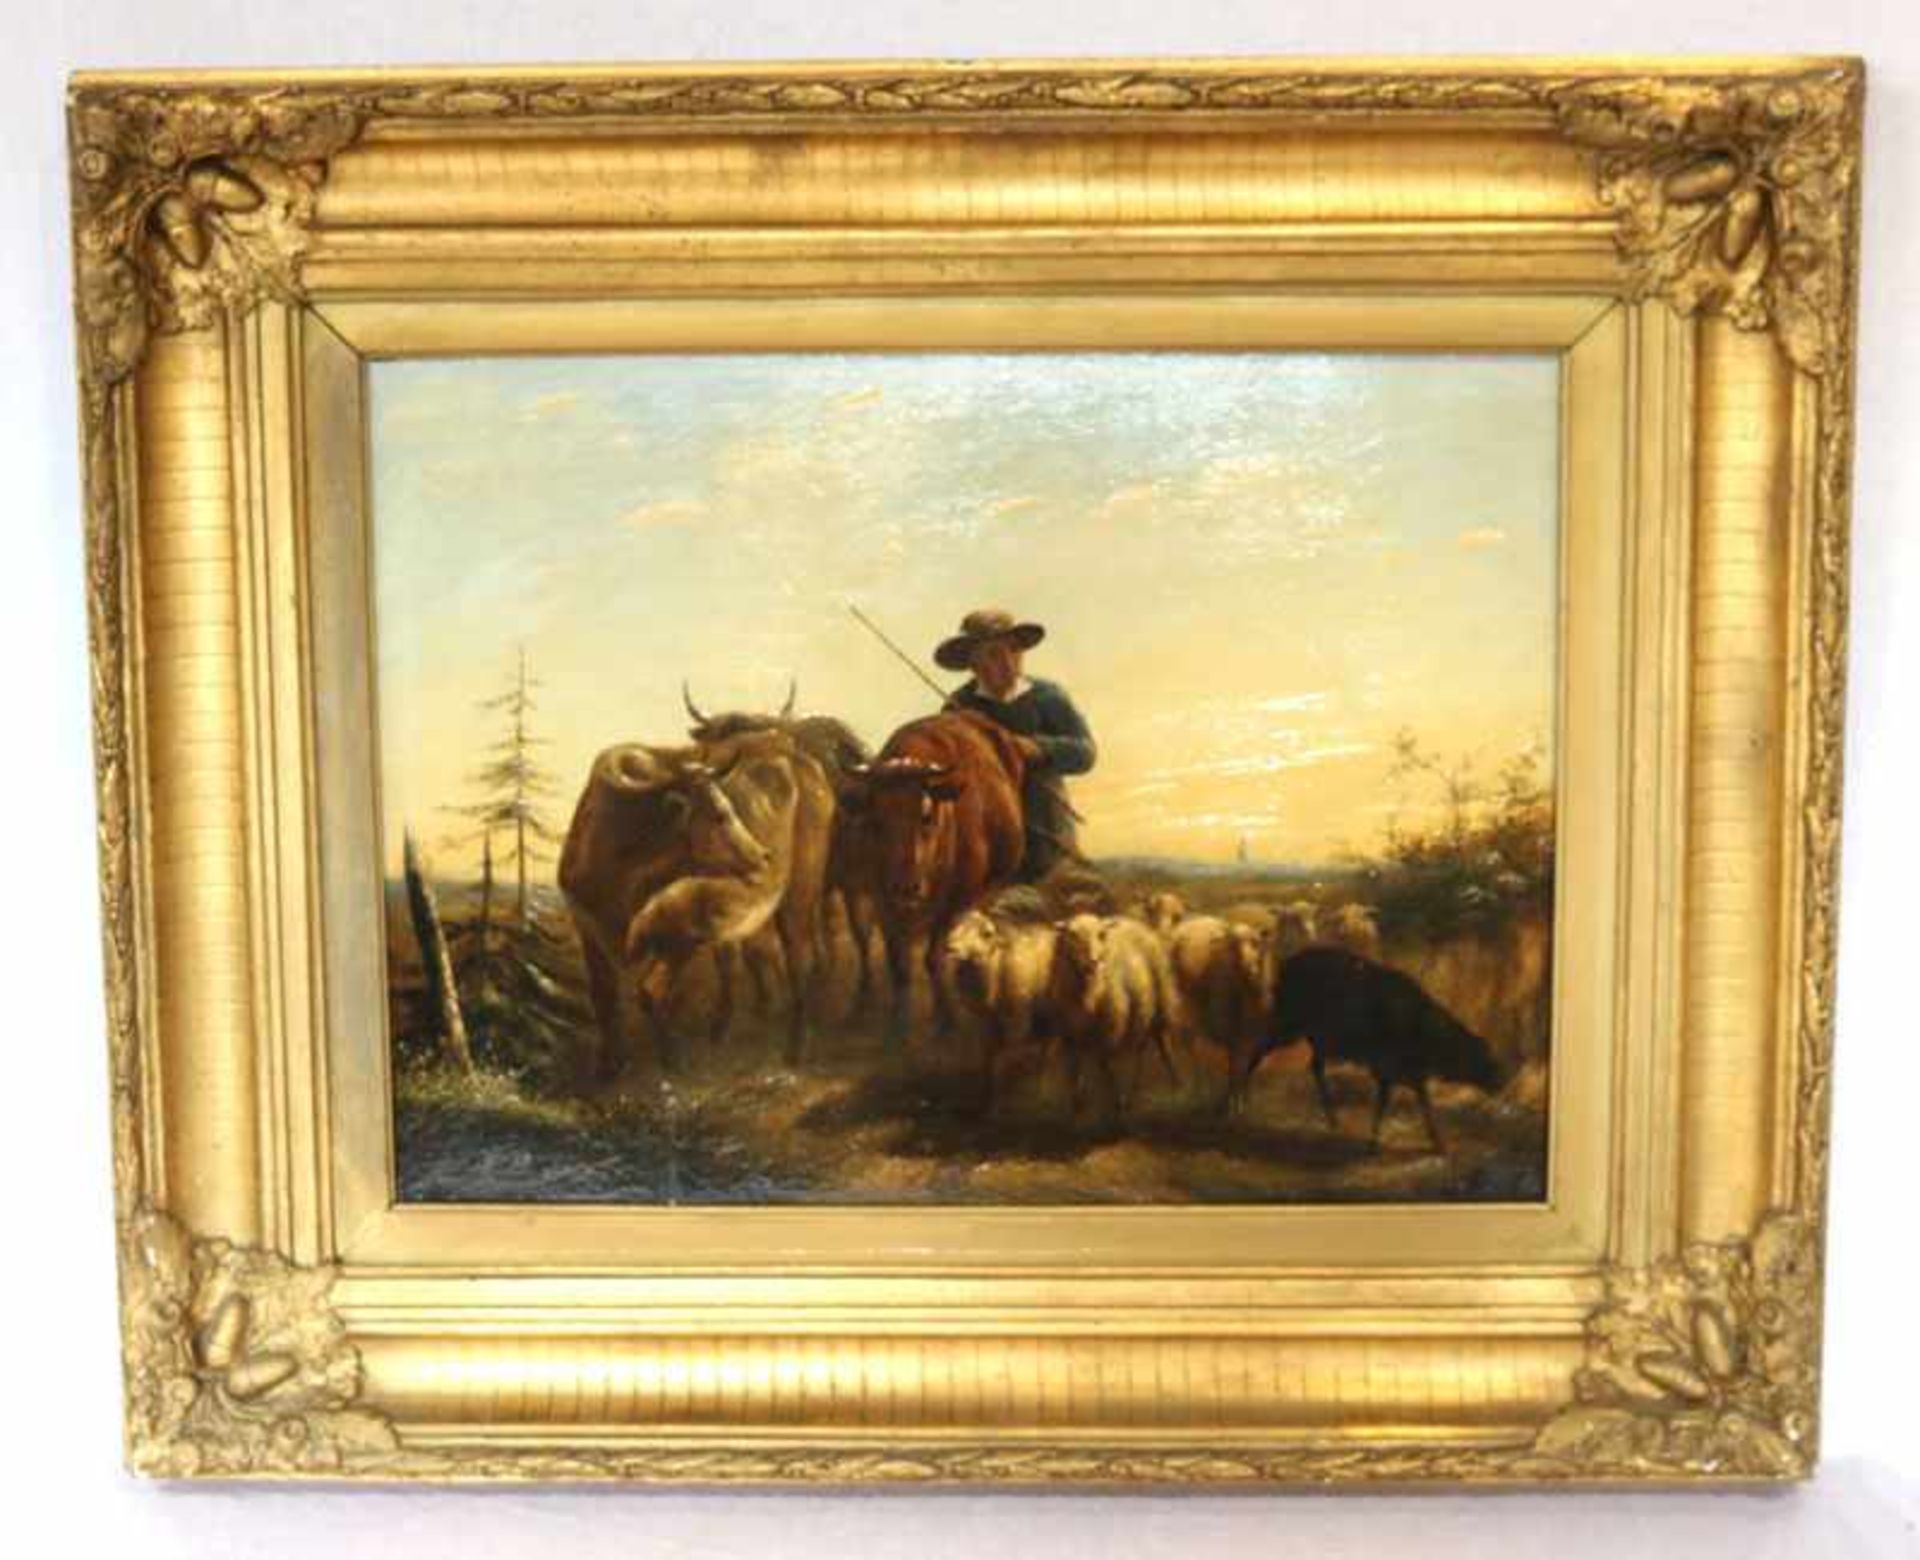 Gemälde ÖL/Holz 'Schäfer-Szenerie - Hirte mit Rindern und Schafen', undeutlich signiert, um 1900,